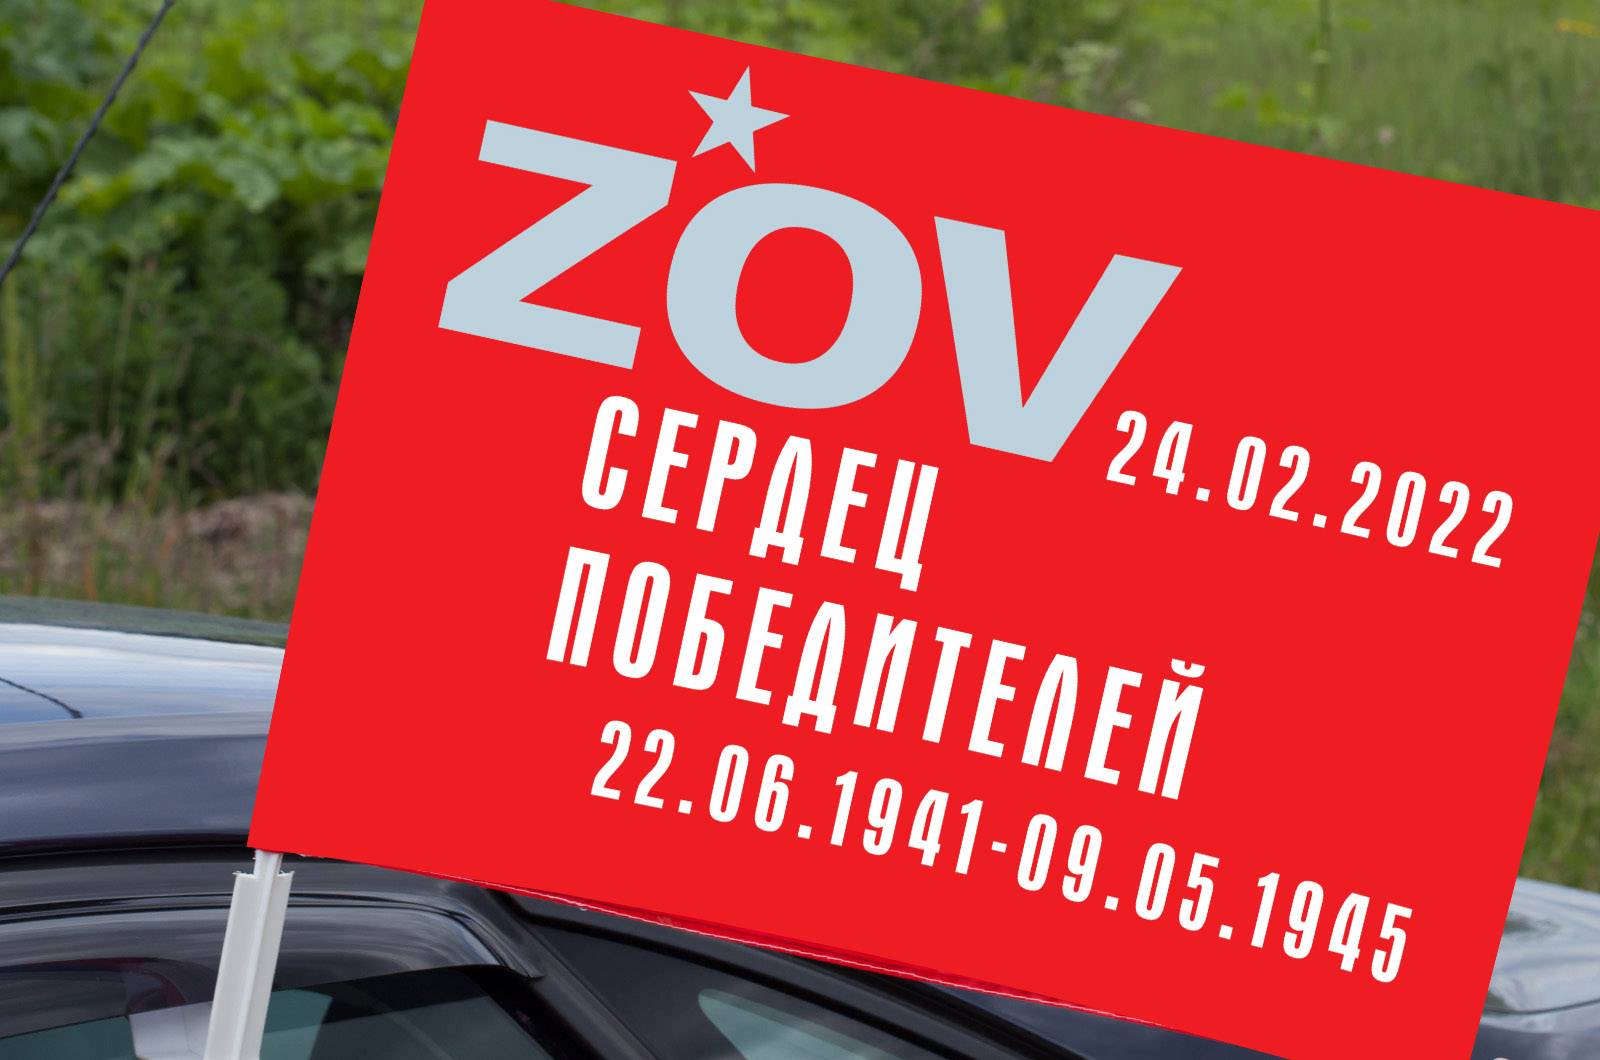 Автомобильный флаг "ZOV сердец победителей"